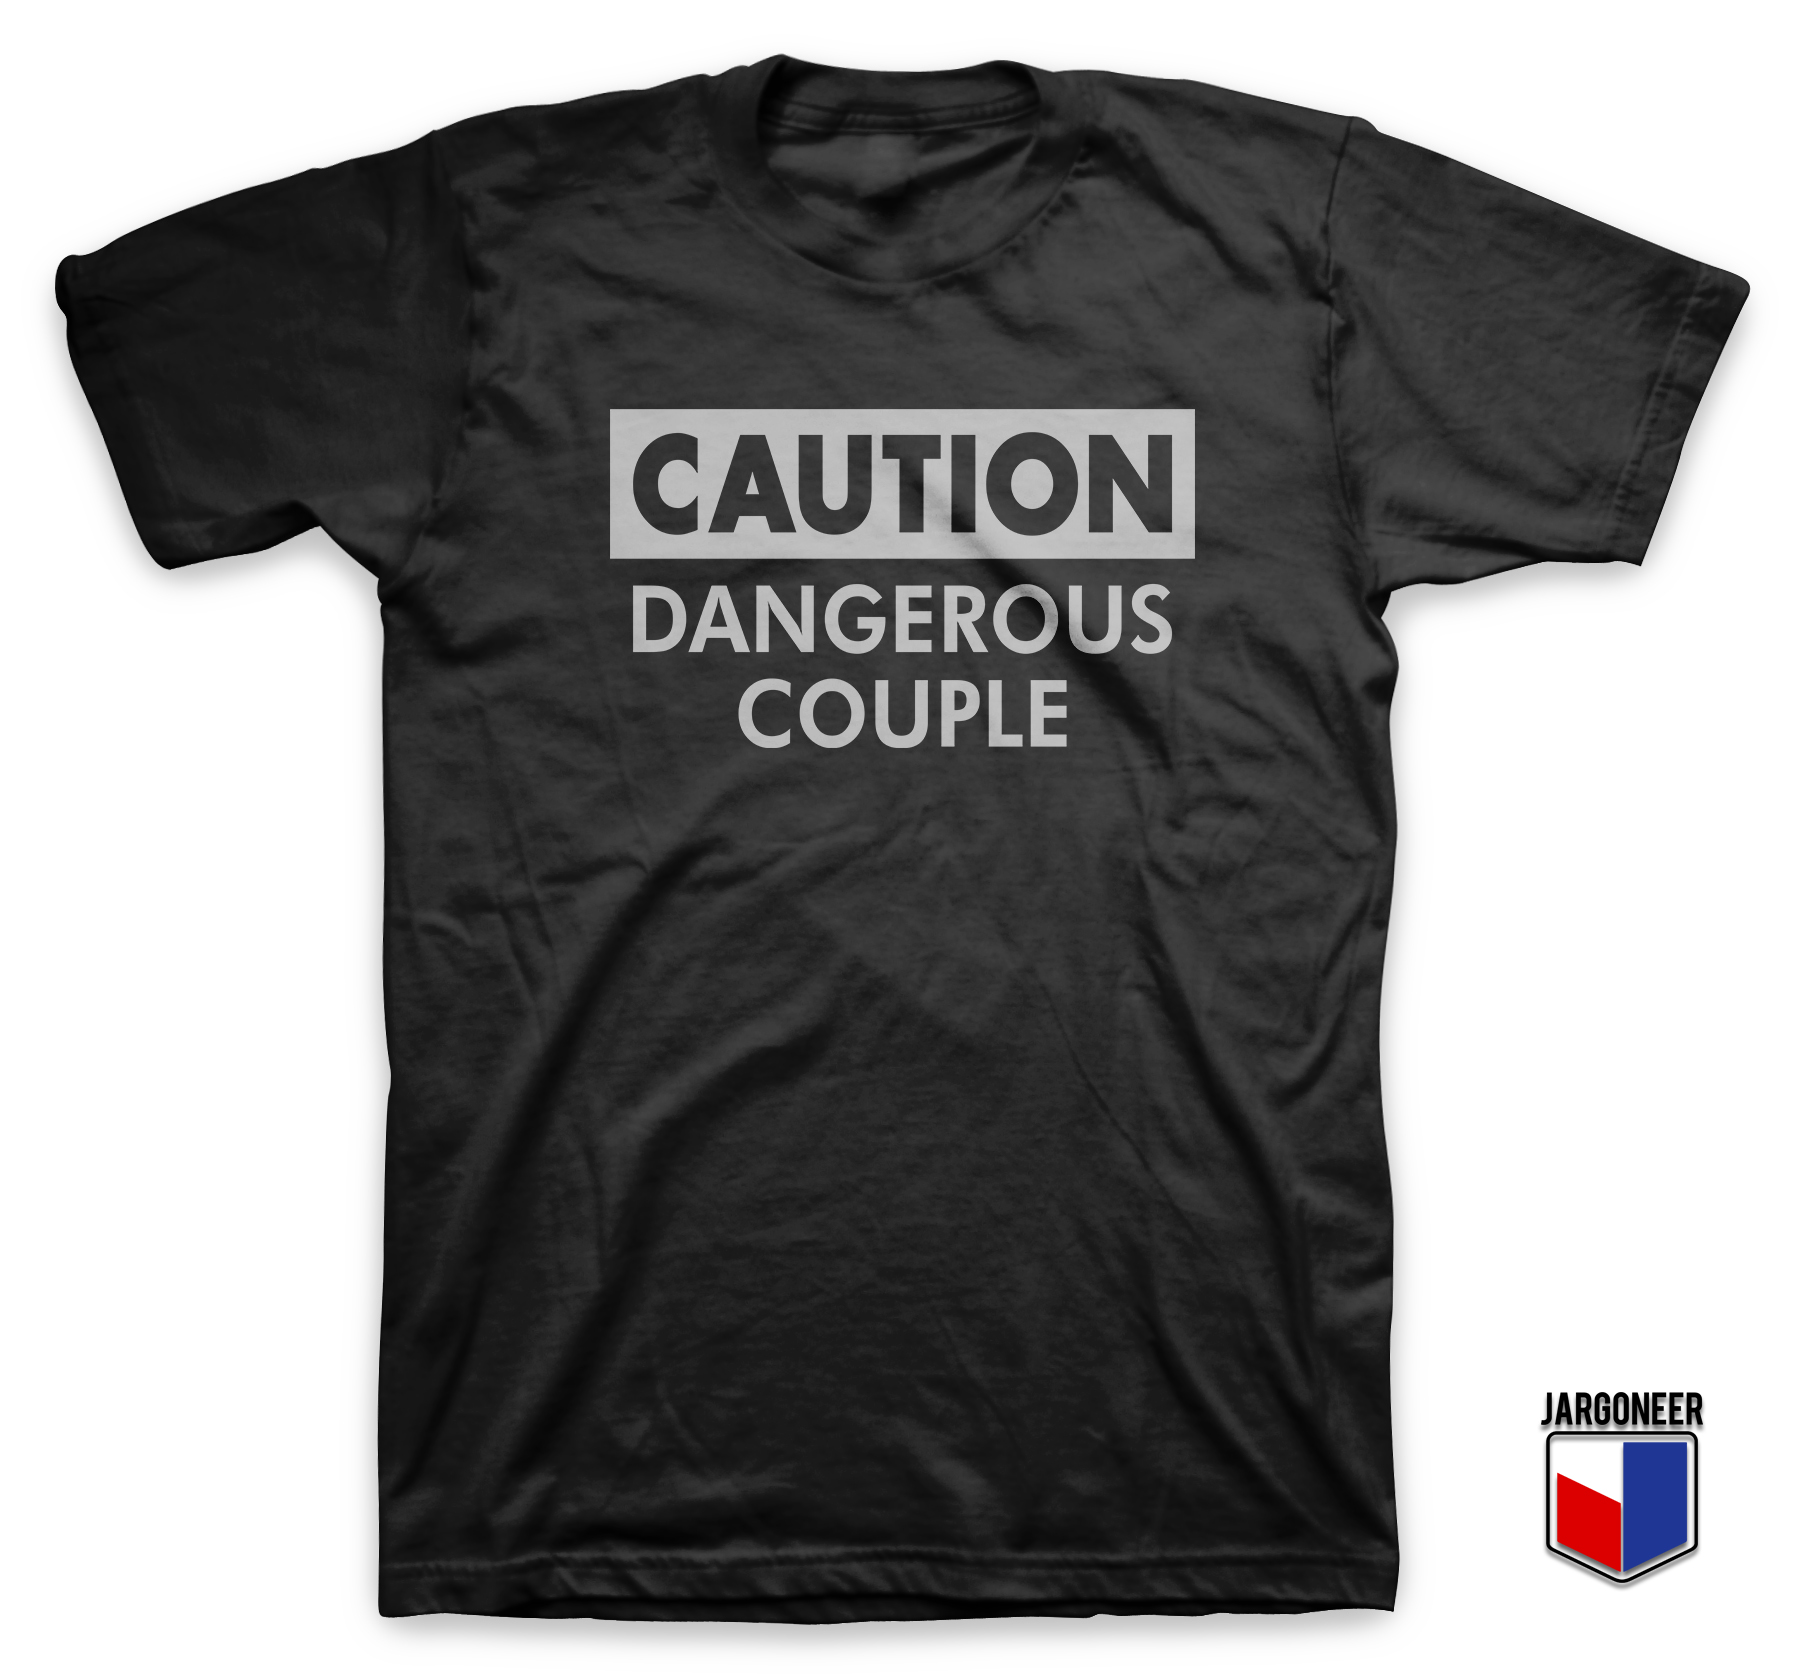 Caution Dangerous Couple Black T Shirt - Shop Unique Graphic Cool Shirt Designs